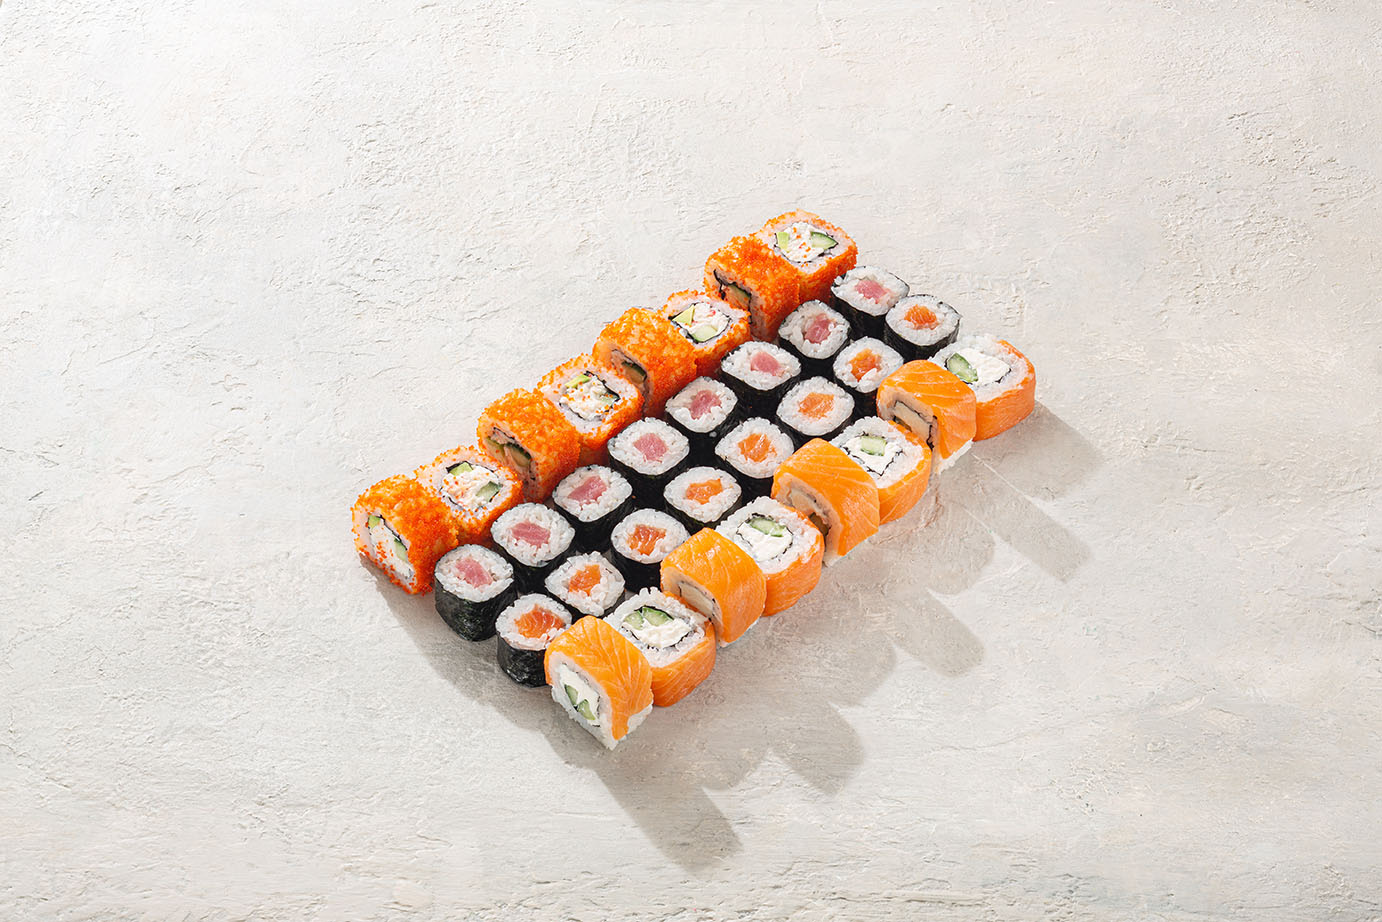 Заказать набор суши с доставкой в спб фото 92